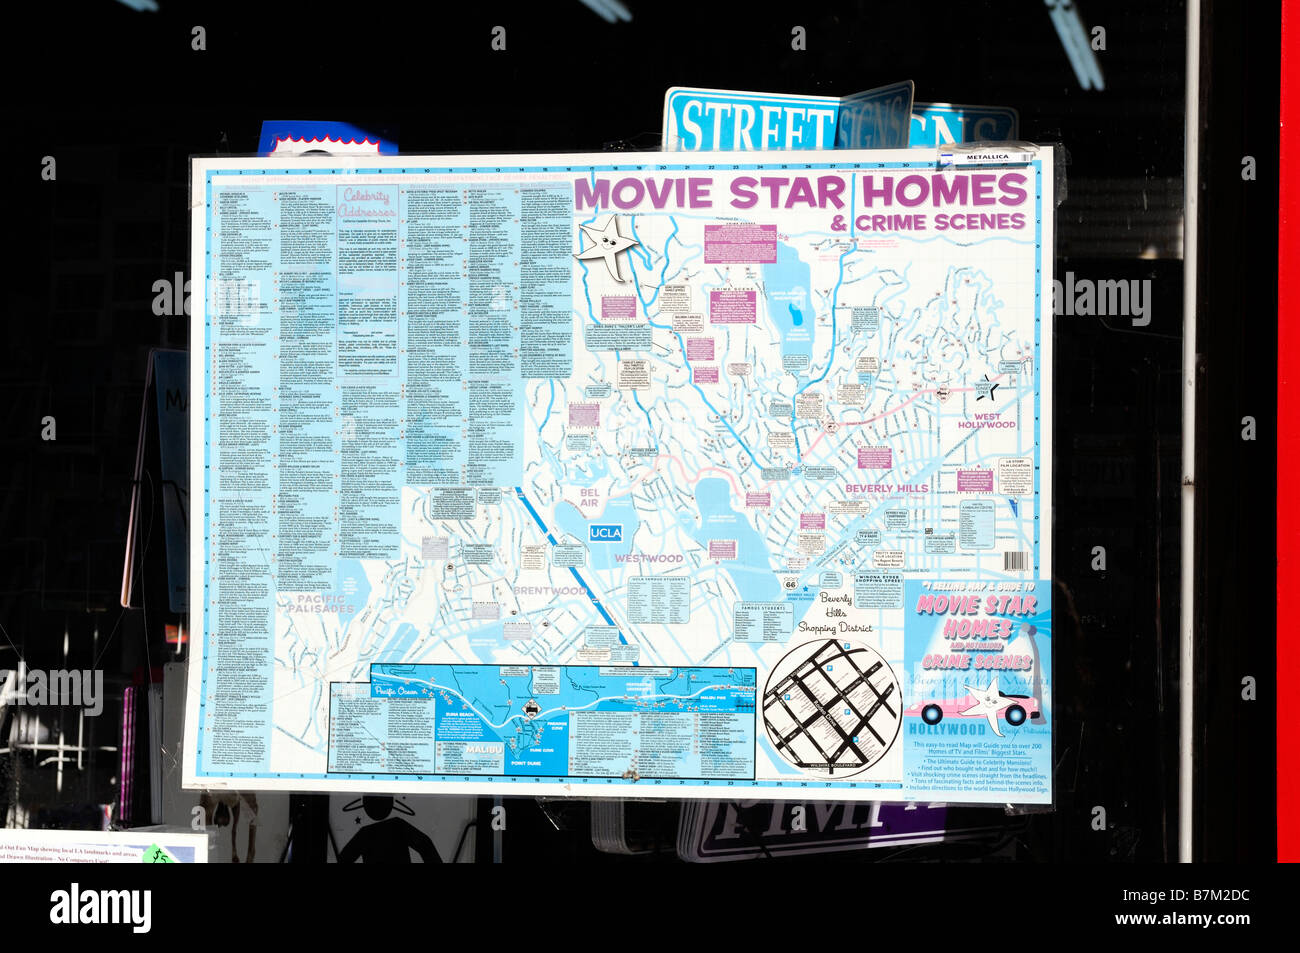 Vitrine afficher la carte montrant une visite de hollywood movie star homes des scènes de crime à Los Angeles ne tourisme visites Banque D'Images